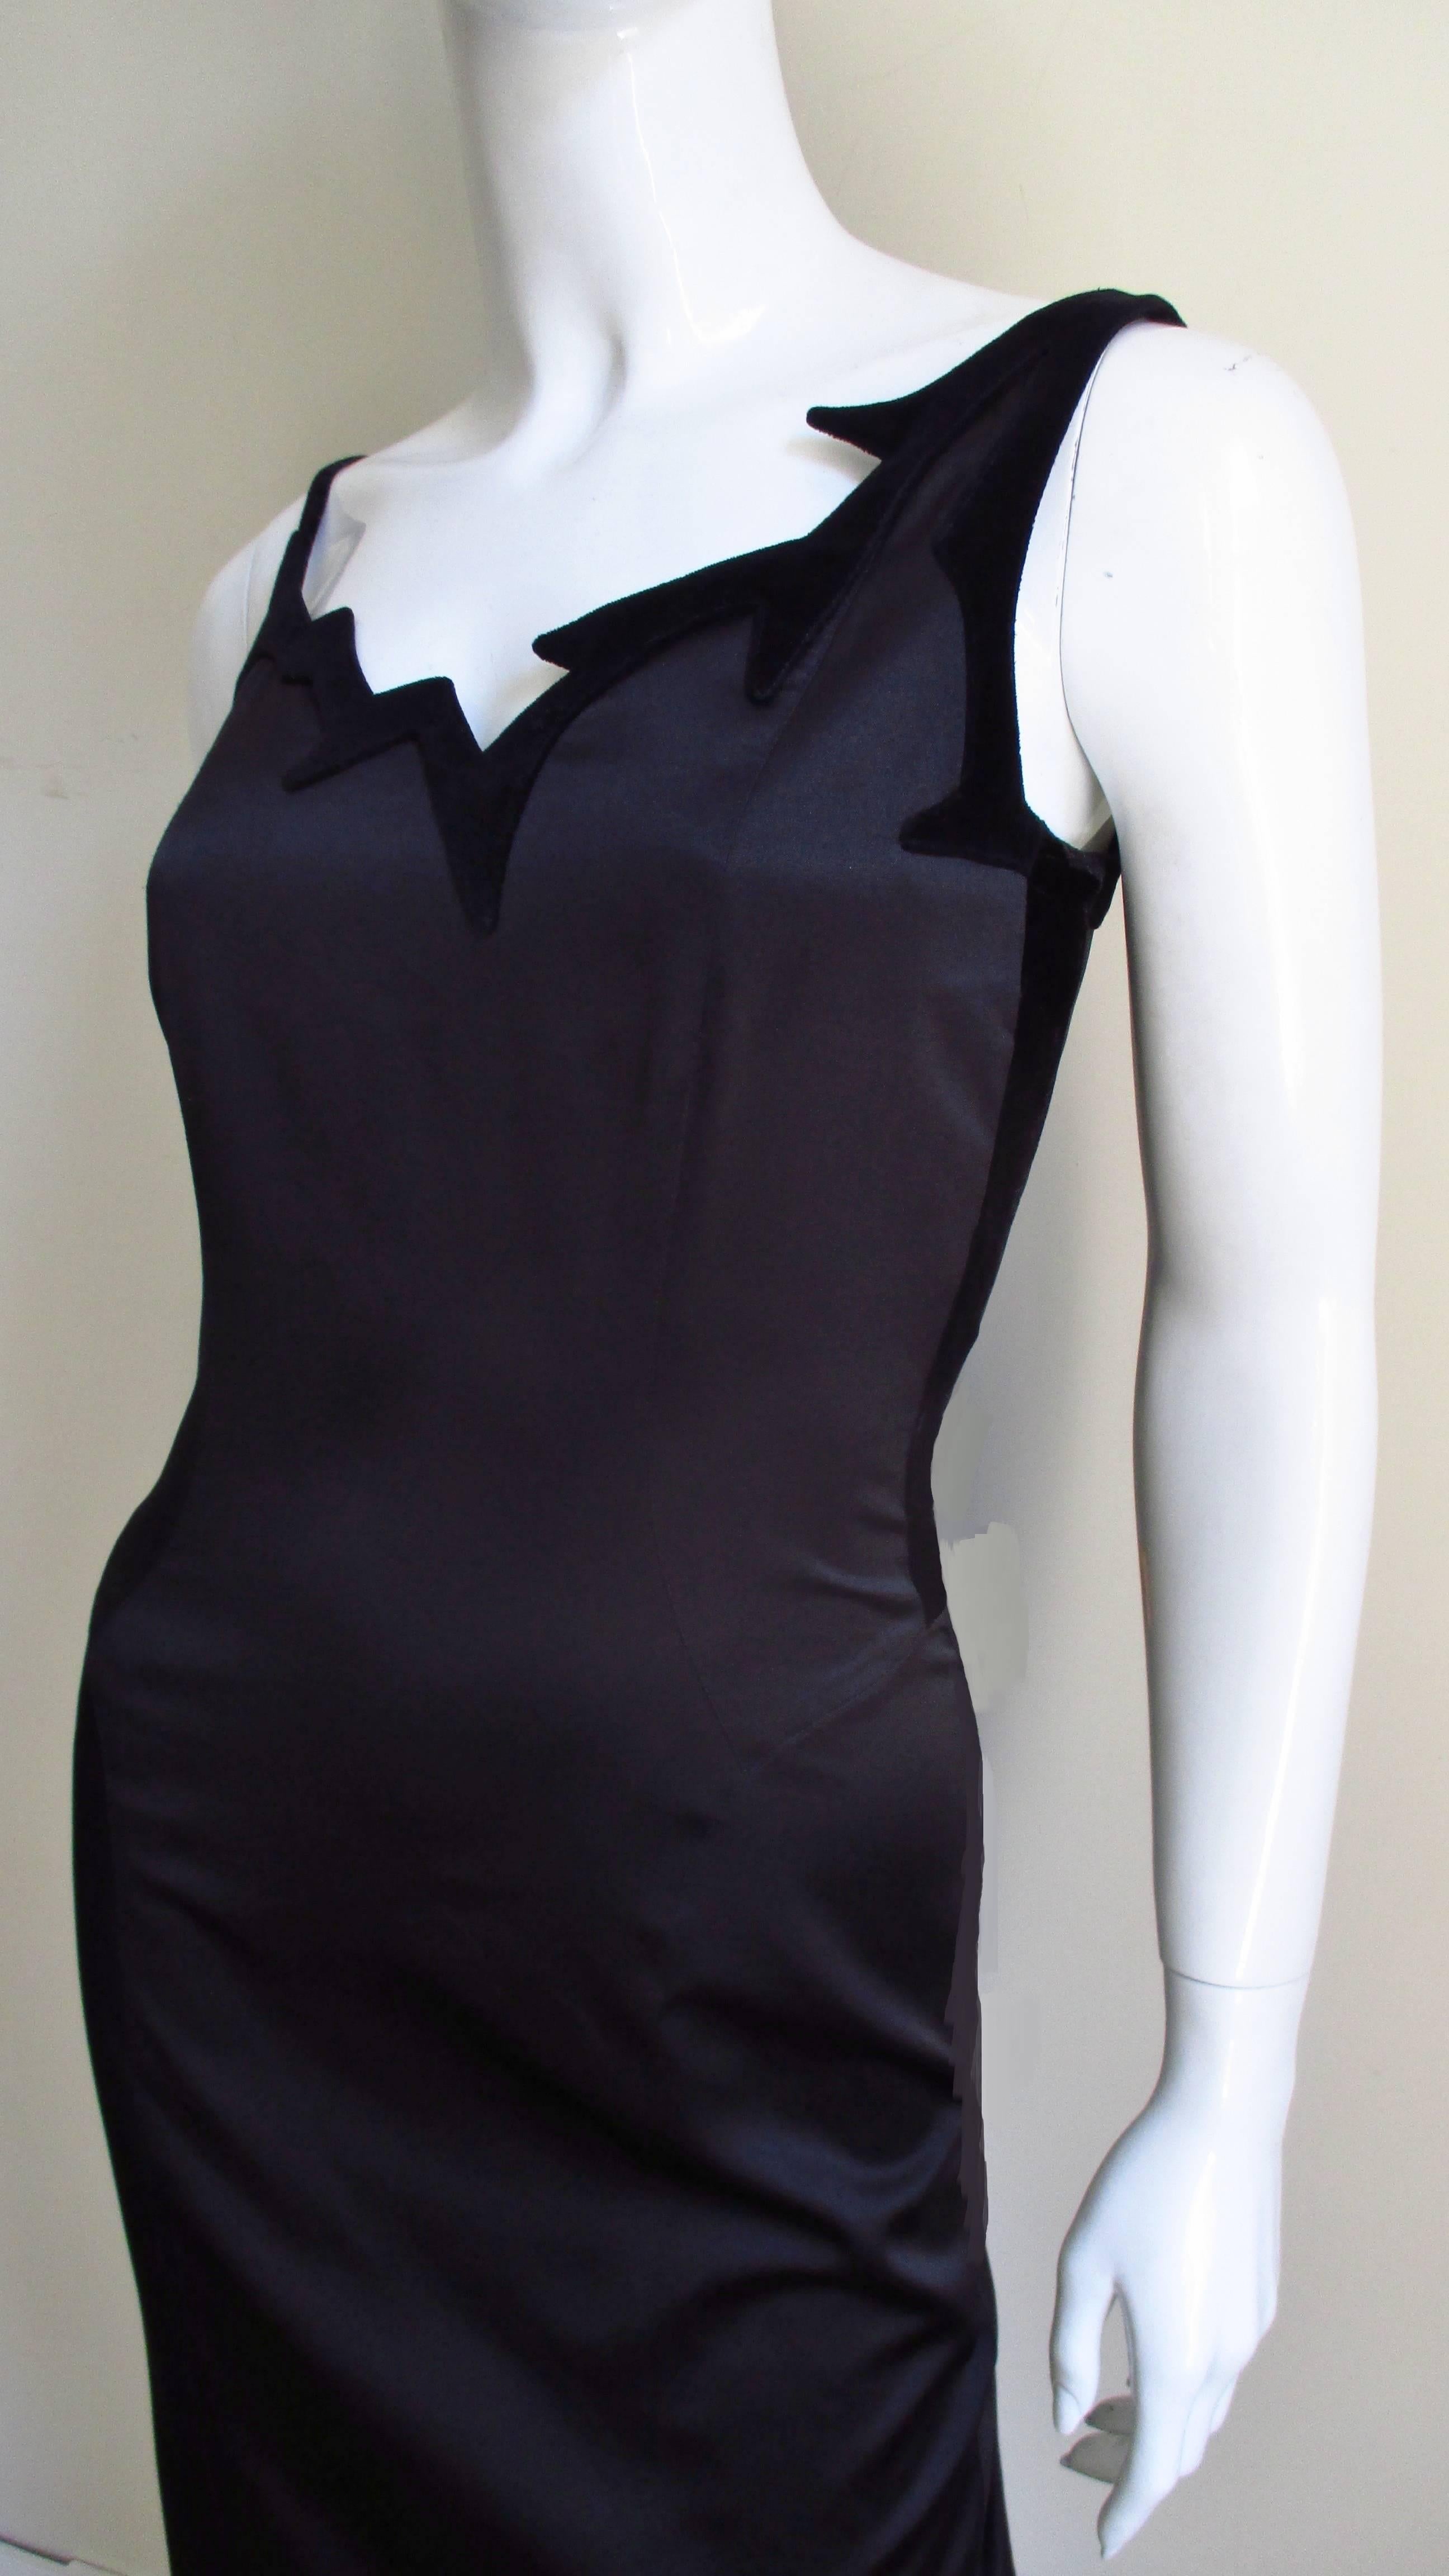 Une fabuleuse robe en soie noire de Thierry Mugler. Il s'agit d'une robe semi-montante avec une encolure asymétrique à bords déchiquetés soulignée de velours noir et une jupe droite. Il est entièrement doublé de soie et doté d'une fermeture à